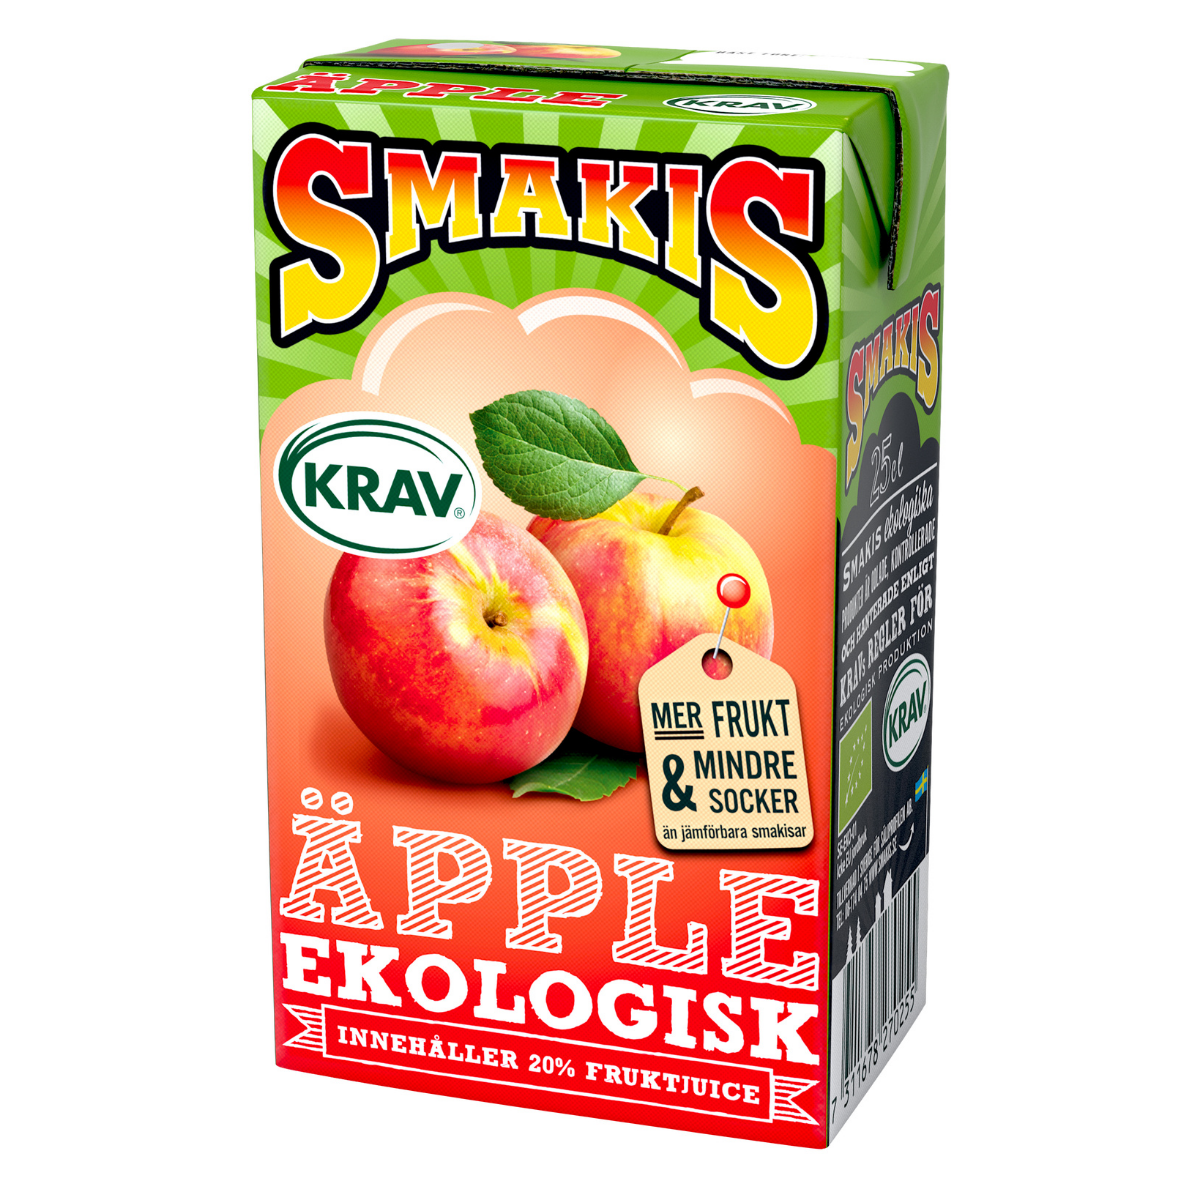 Smakis's Apfelgetränk'